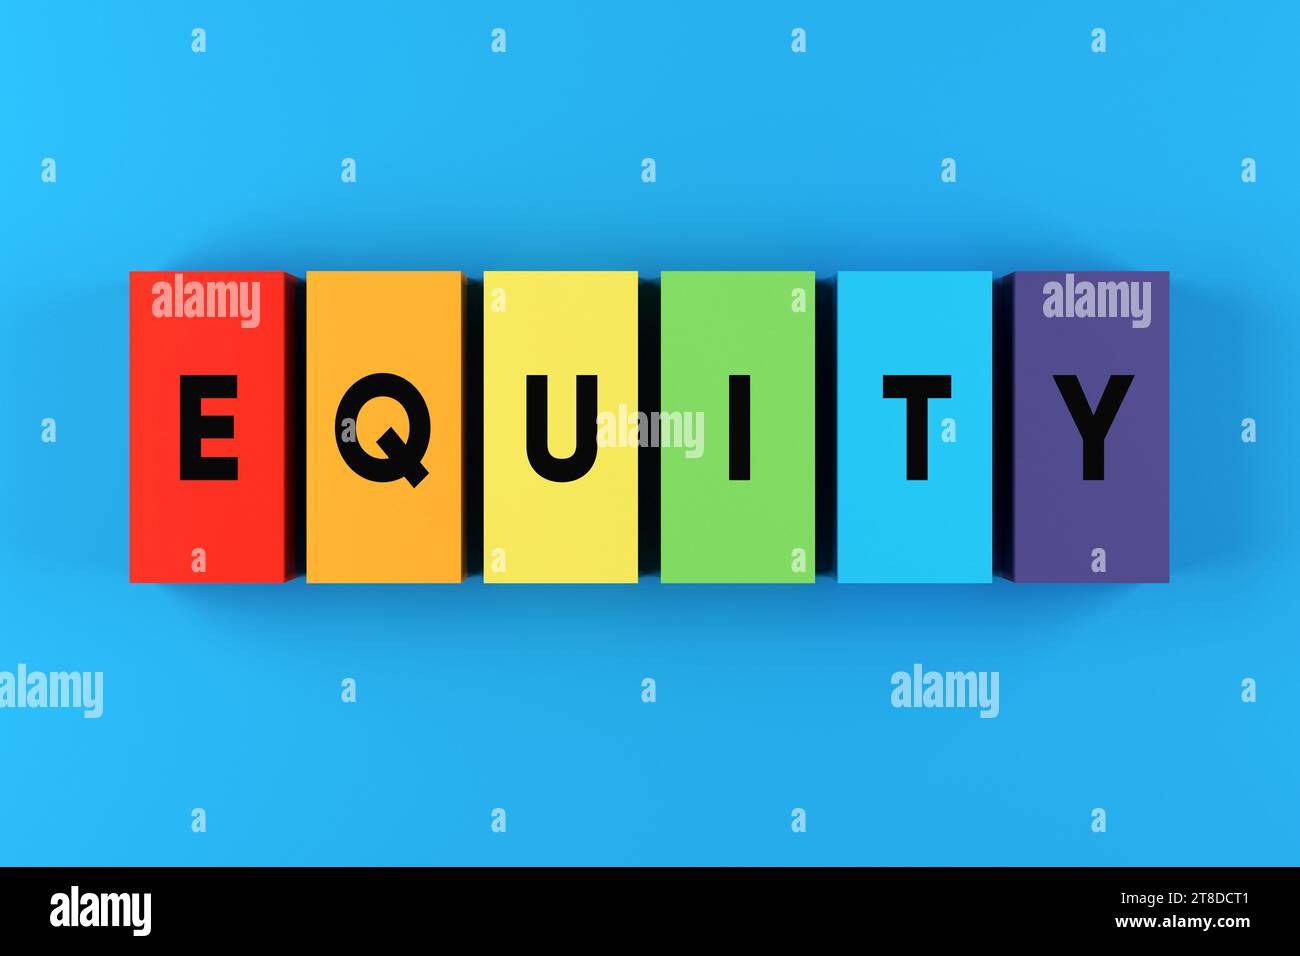 Gleichstellung und Gleichstellung. LGBTIQ-Rechte. Das Wort "Equity" auf bunten Blöcken der Regenbogenflagge. Stockfoto